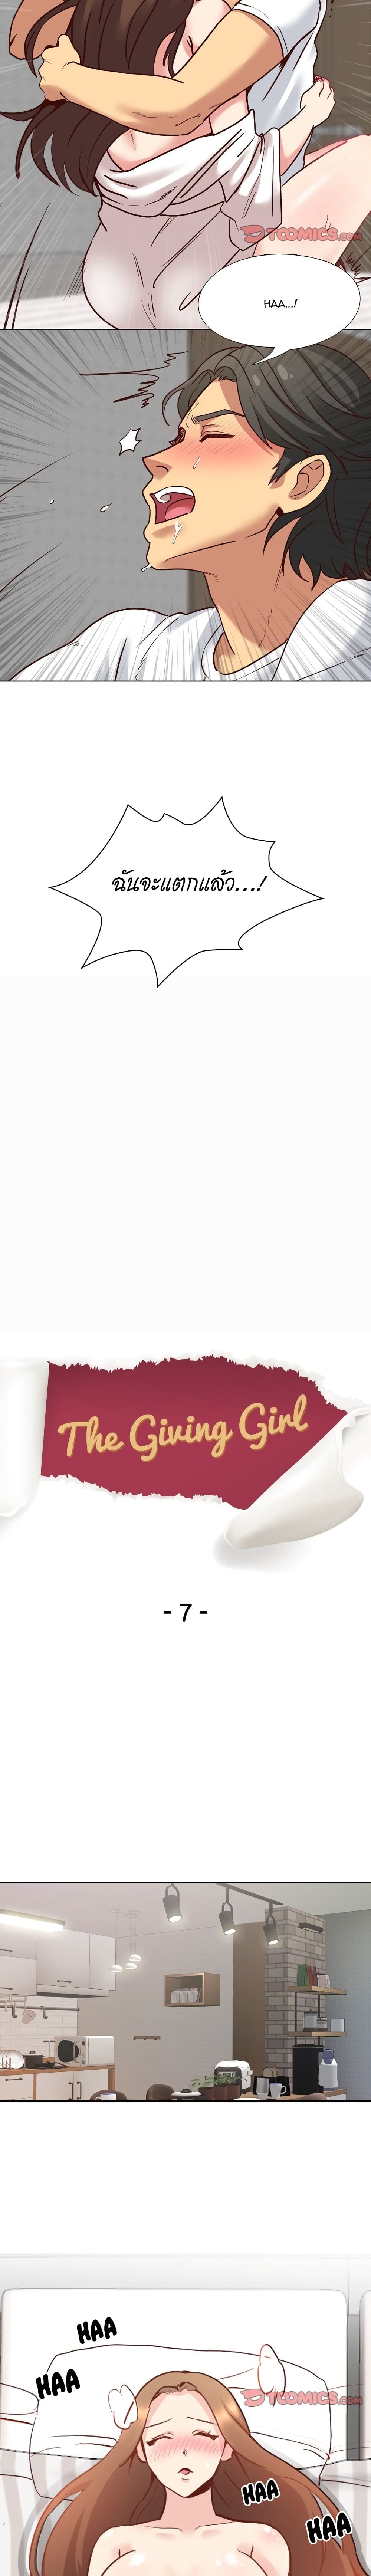 Giving Girl 7 02